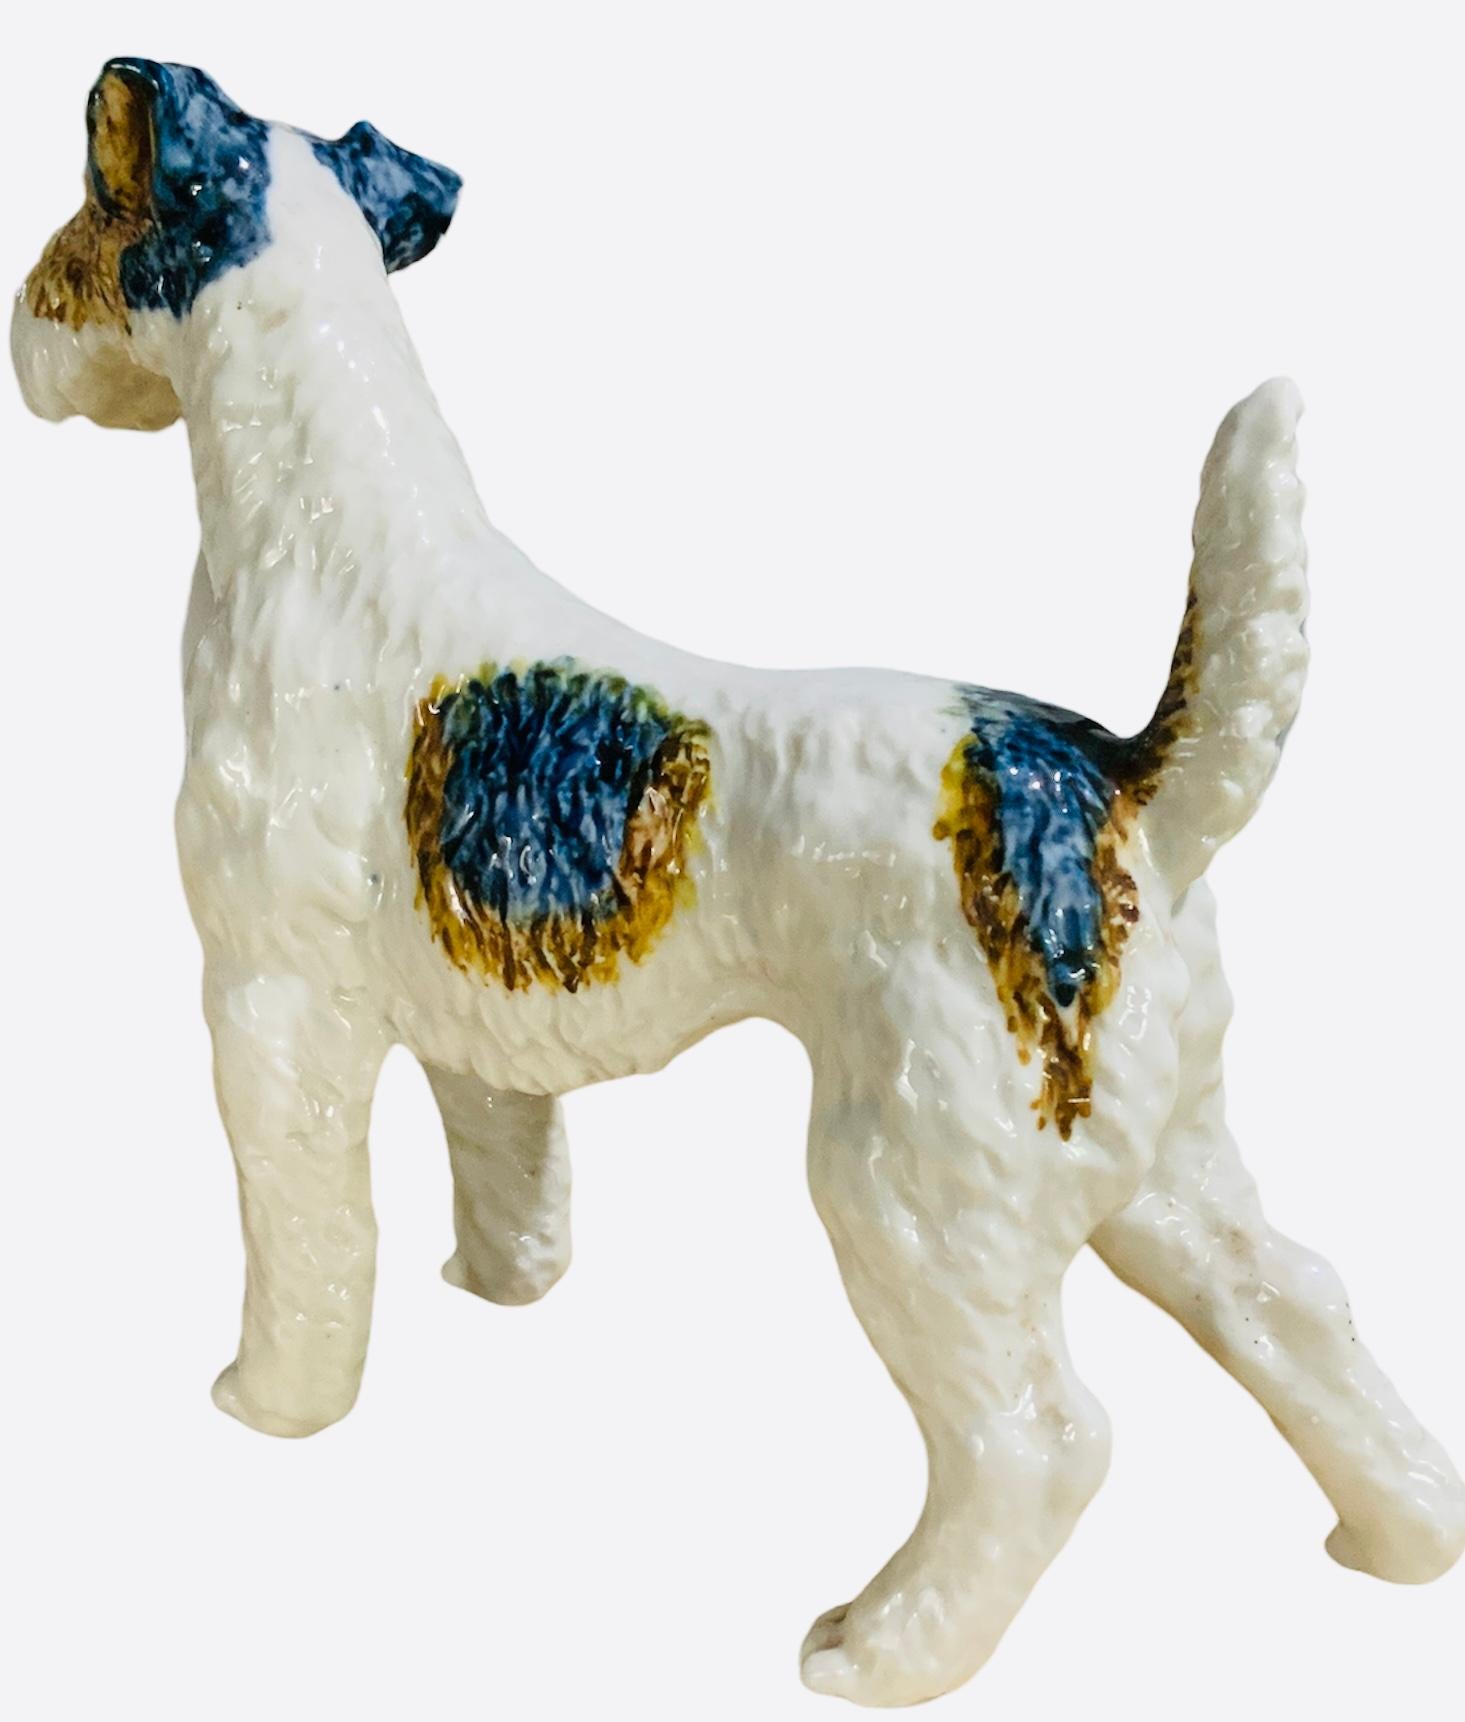 Voici une adorable figurine en porcelaine émaillée de taille moyenne représentant un chien Terrier. Elle est peinte à la main en blanc et rehaussée de taches jaune-brun. Très bien fait. Il n'a pas de signe distinctif.